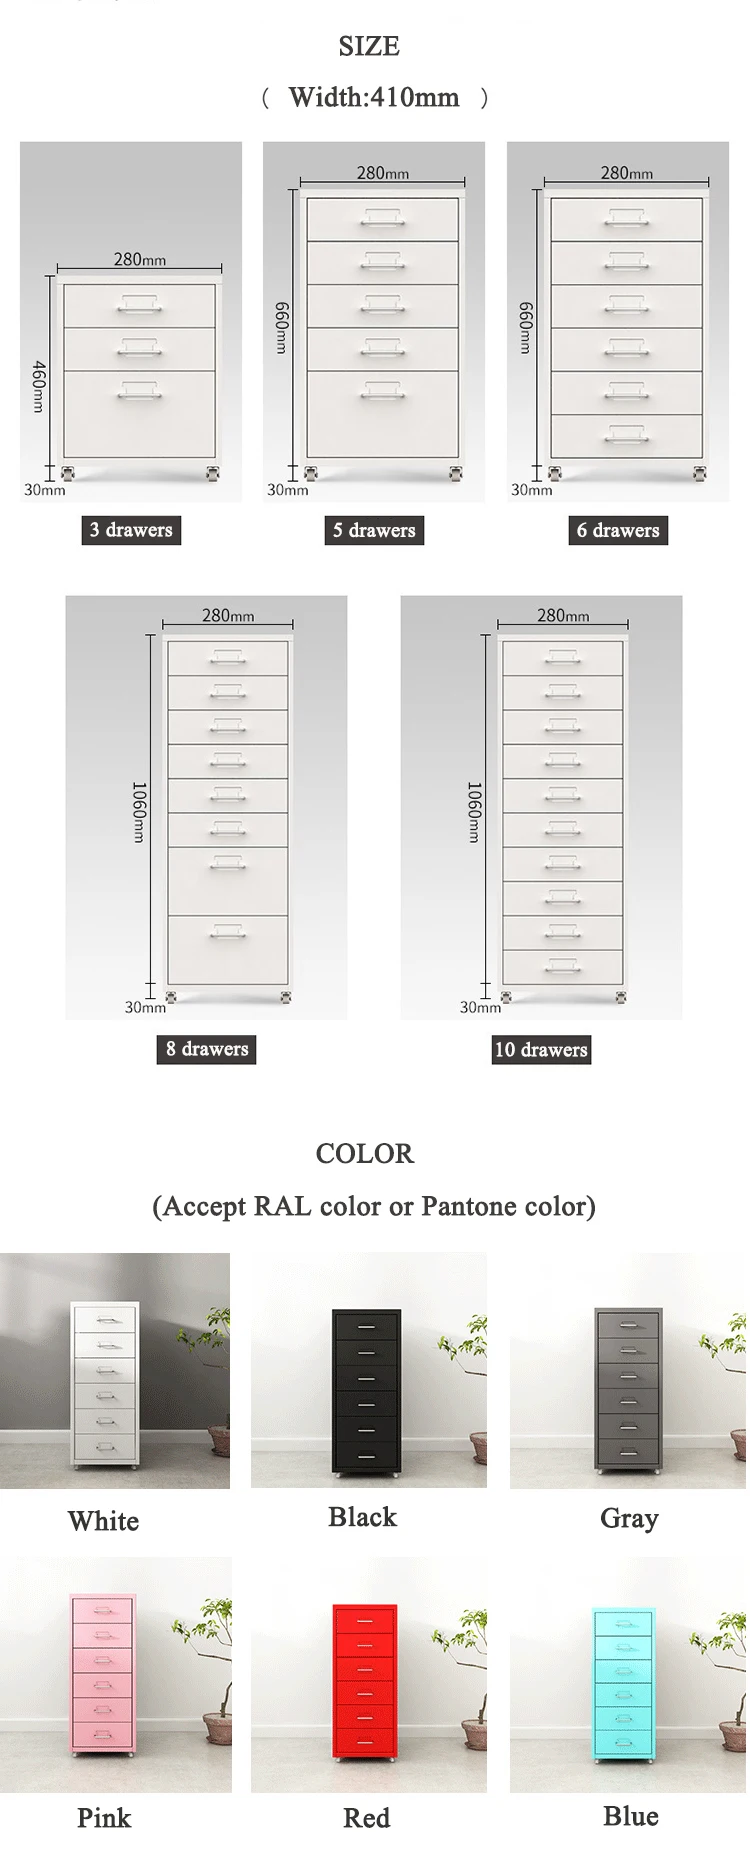 Tamaño y Color.jpg